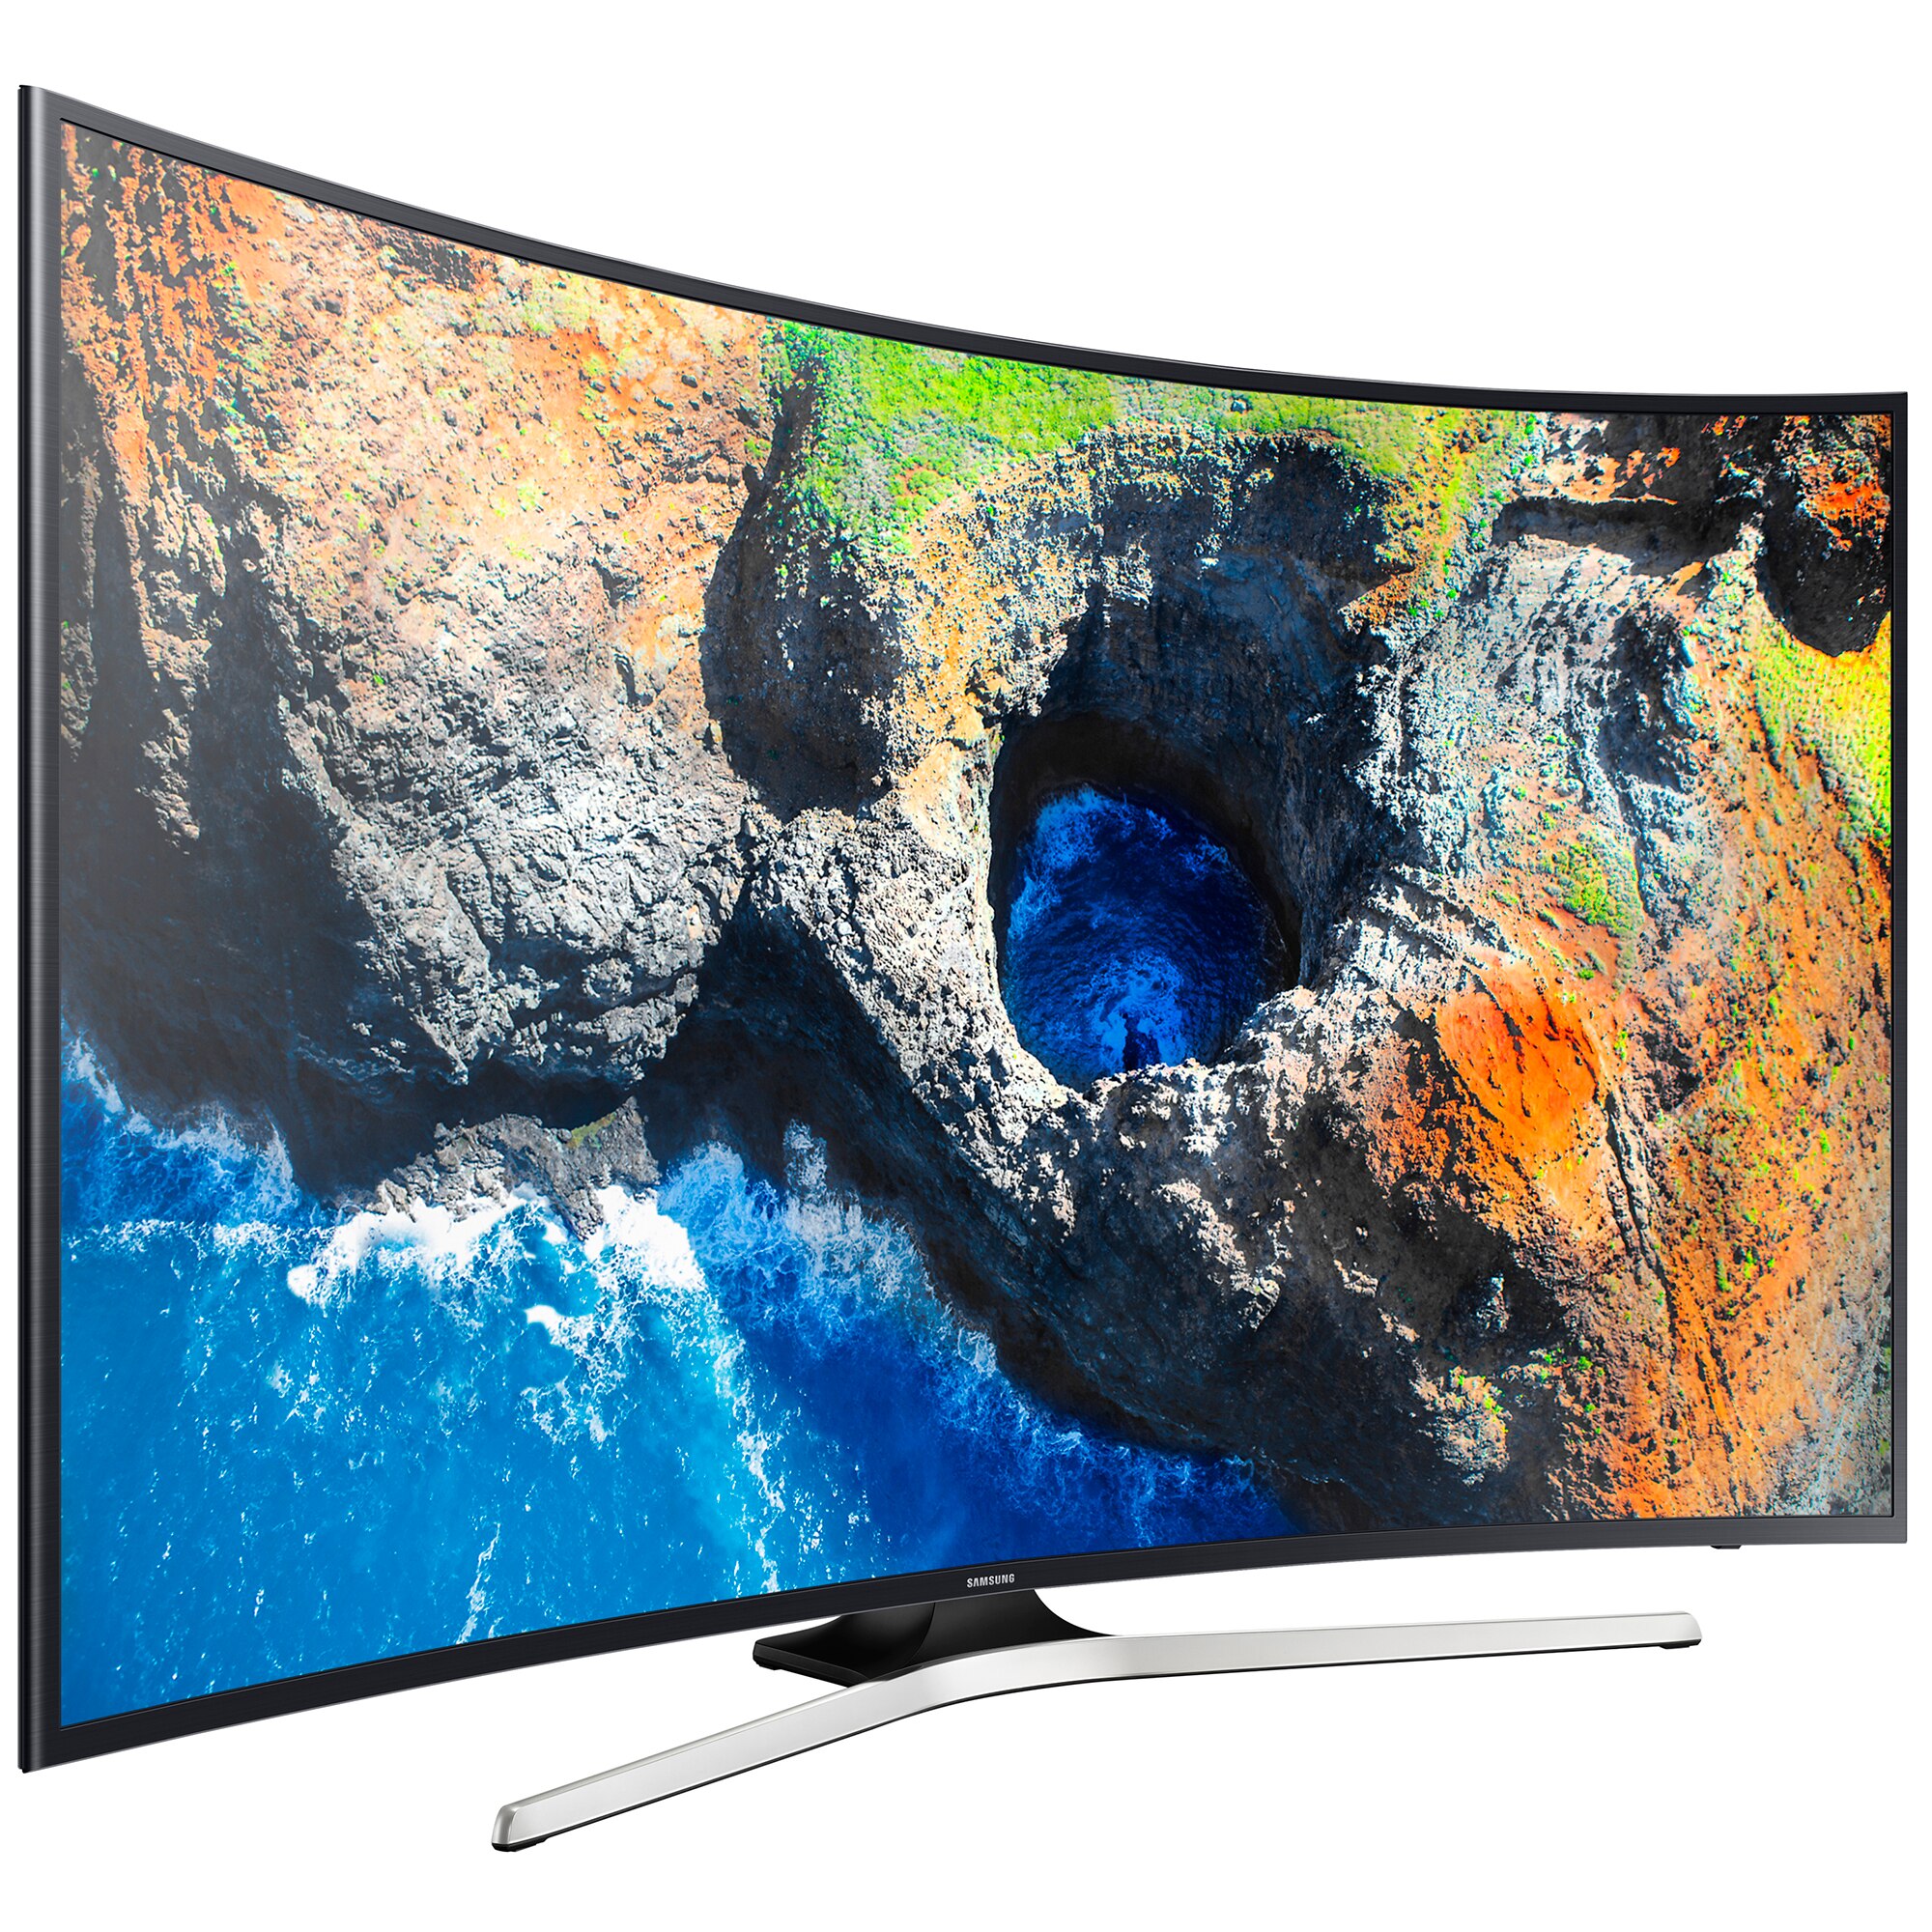 Новый телевизор в кредит. Samsung ue49mu6300u. Samsung ue55mu6300u. Samsung ue49mu6100u. Телевизор самсунг 49 дюймов.